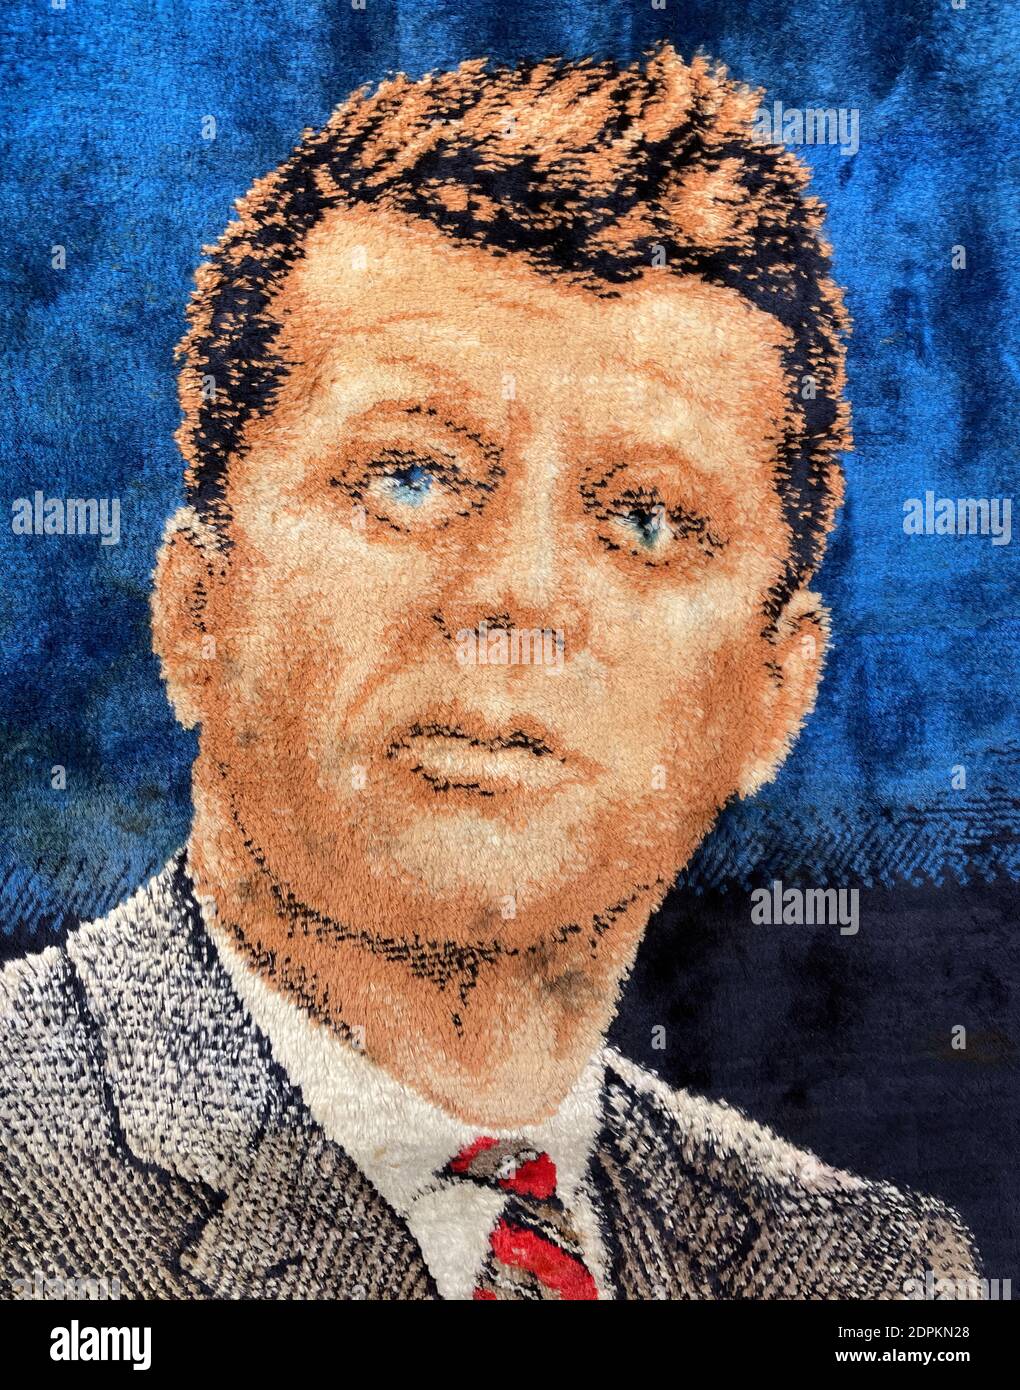 Un ritratto di John F Kennedy il 35° presidente degli Stati Uniti da una coperta intrecciata. Foto Stock